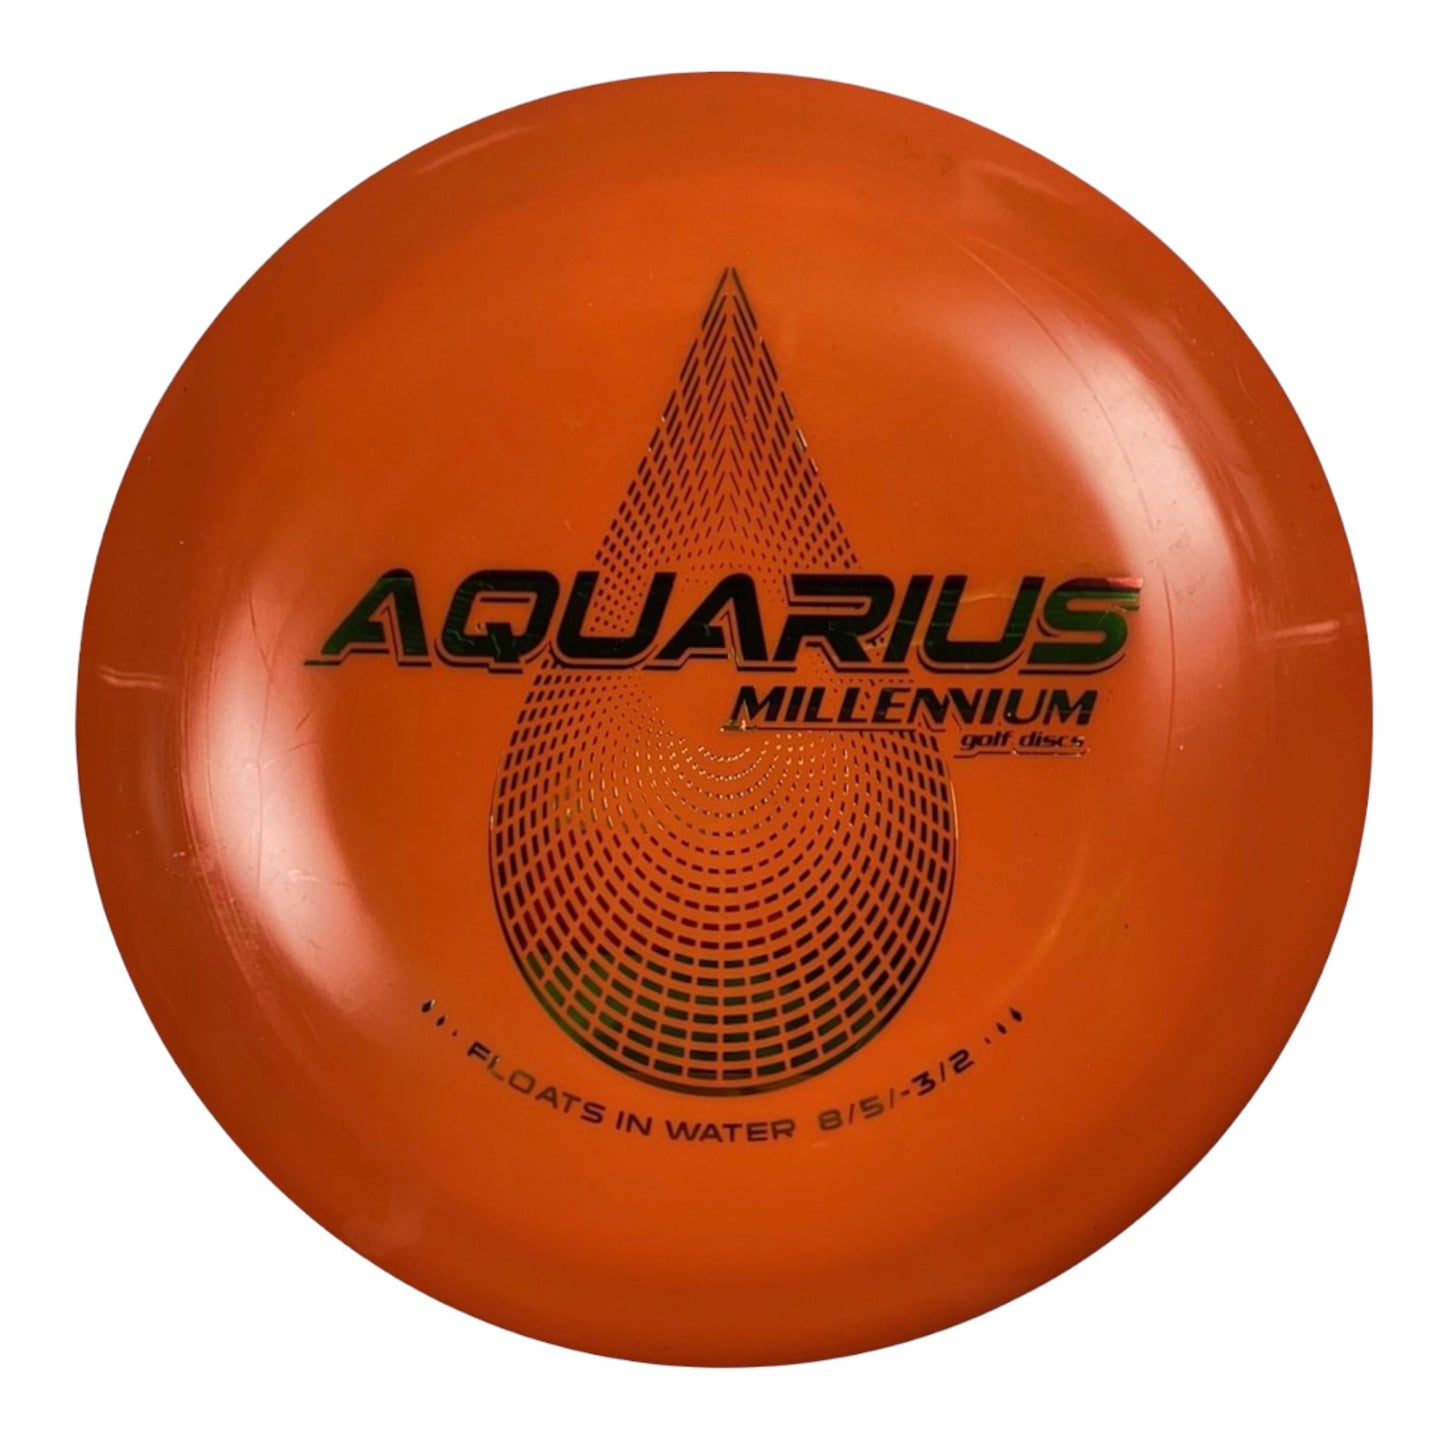 Millennium Golf Discs Aquarius | Standard | Orange/Rasta 150g Disc Golf